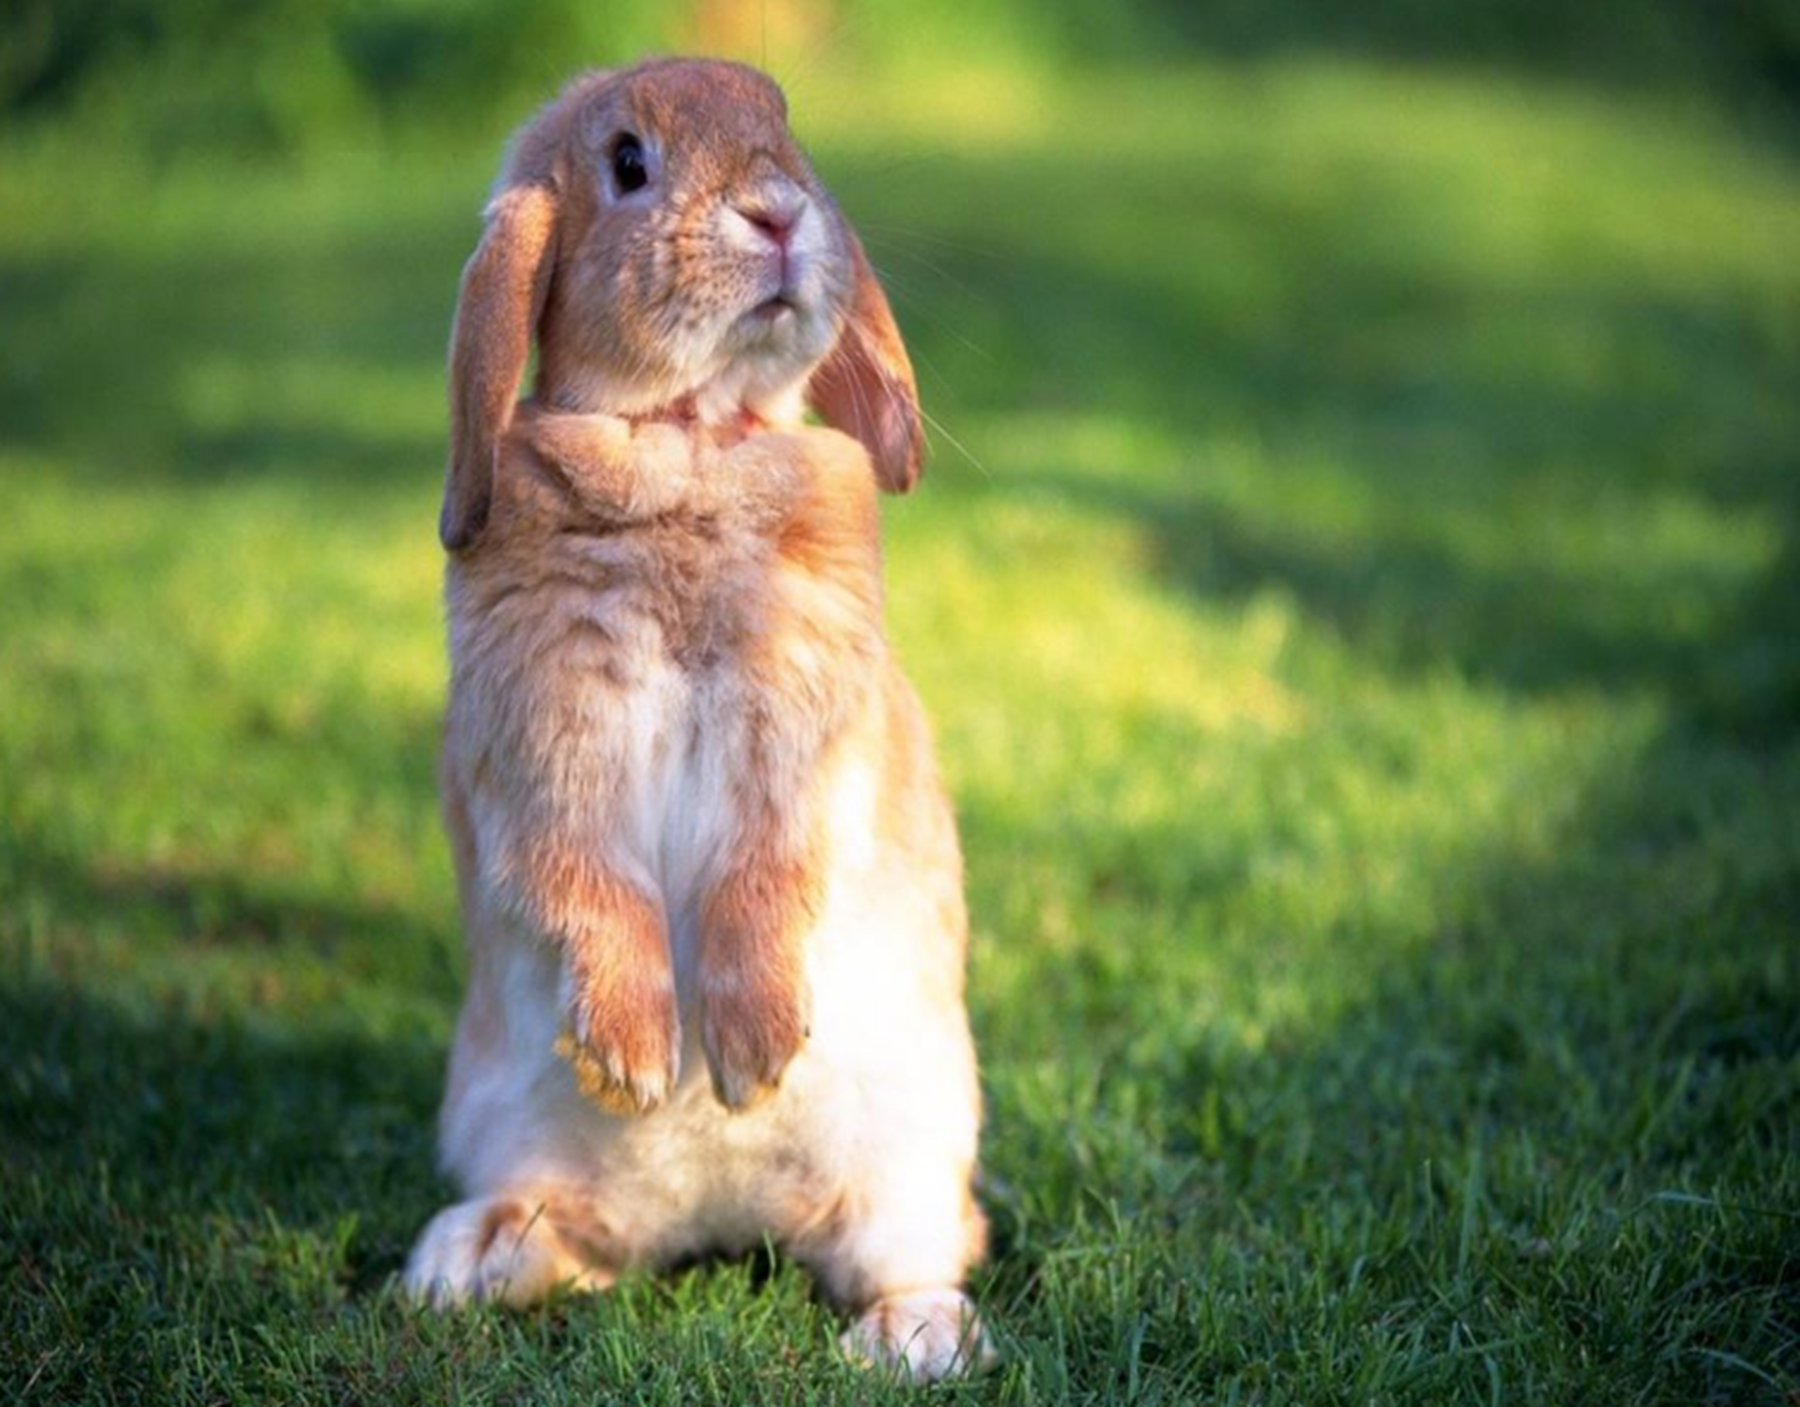 兔子能够发出什么样的声音呢?